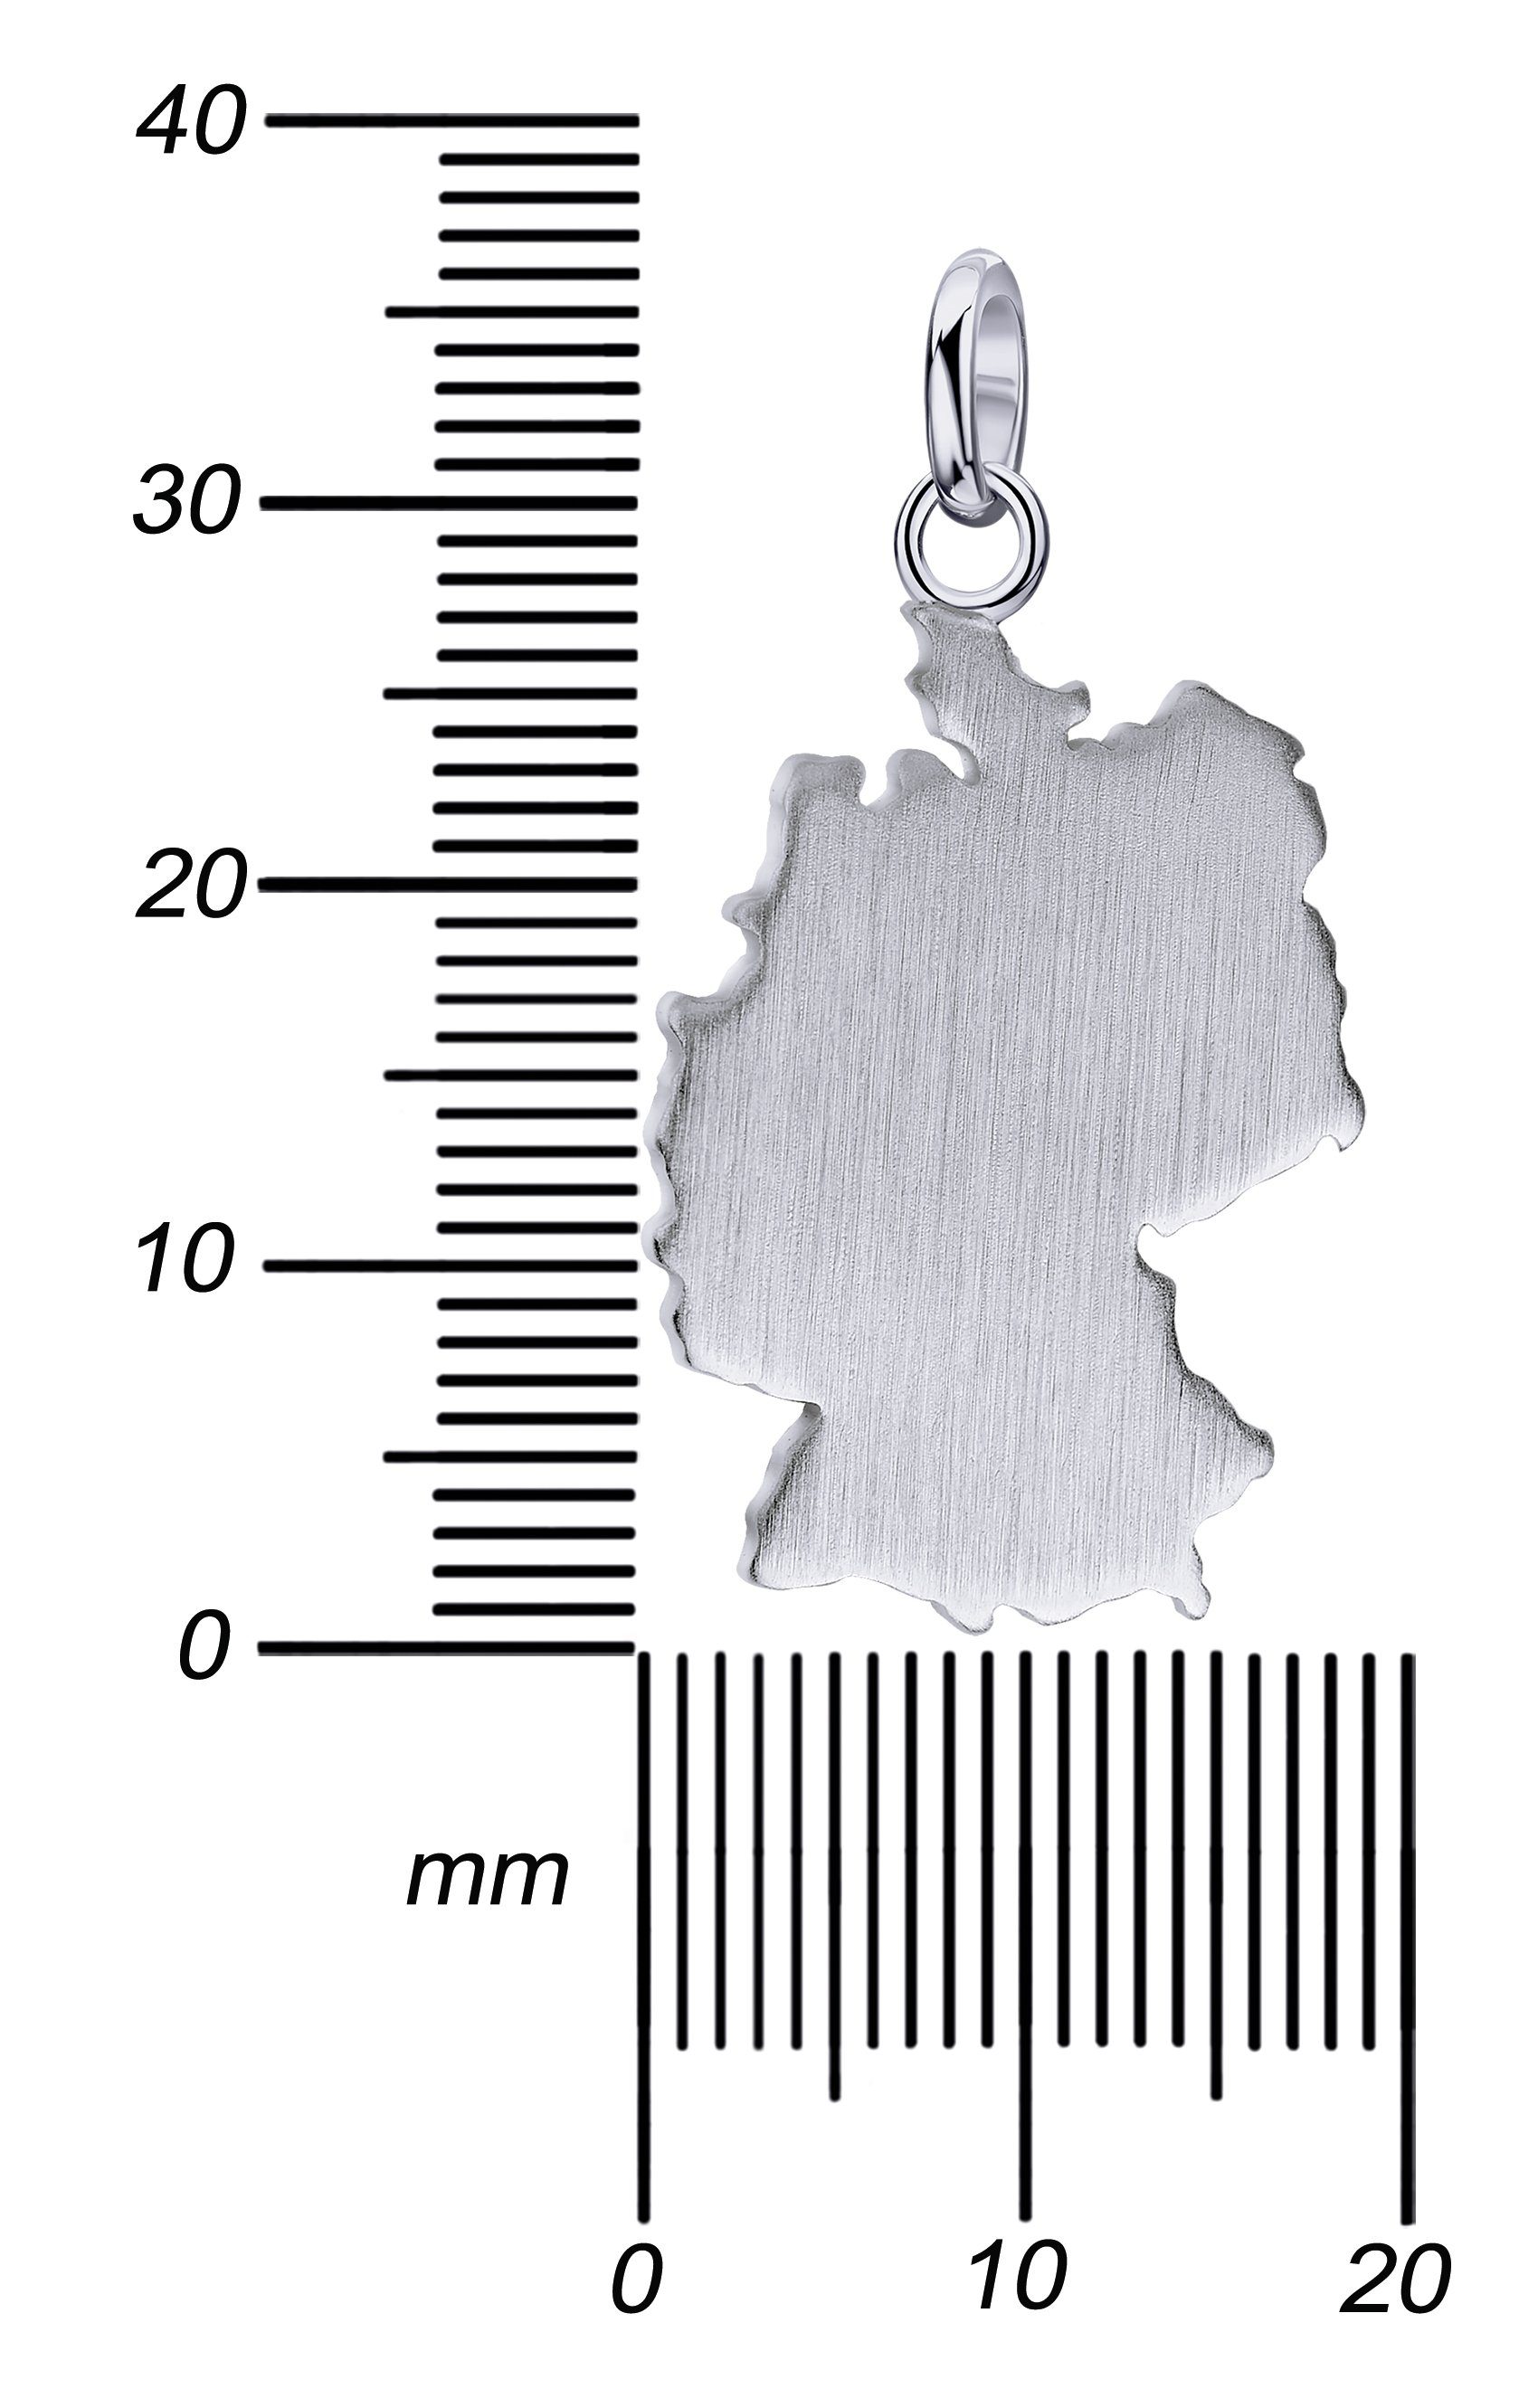 Made Silber für in Germany Damen), Deutschland Germany, Made Anhänger JEVELION Schmuckanhänger- 925 Kettenanhänger (Silberanhänger - in